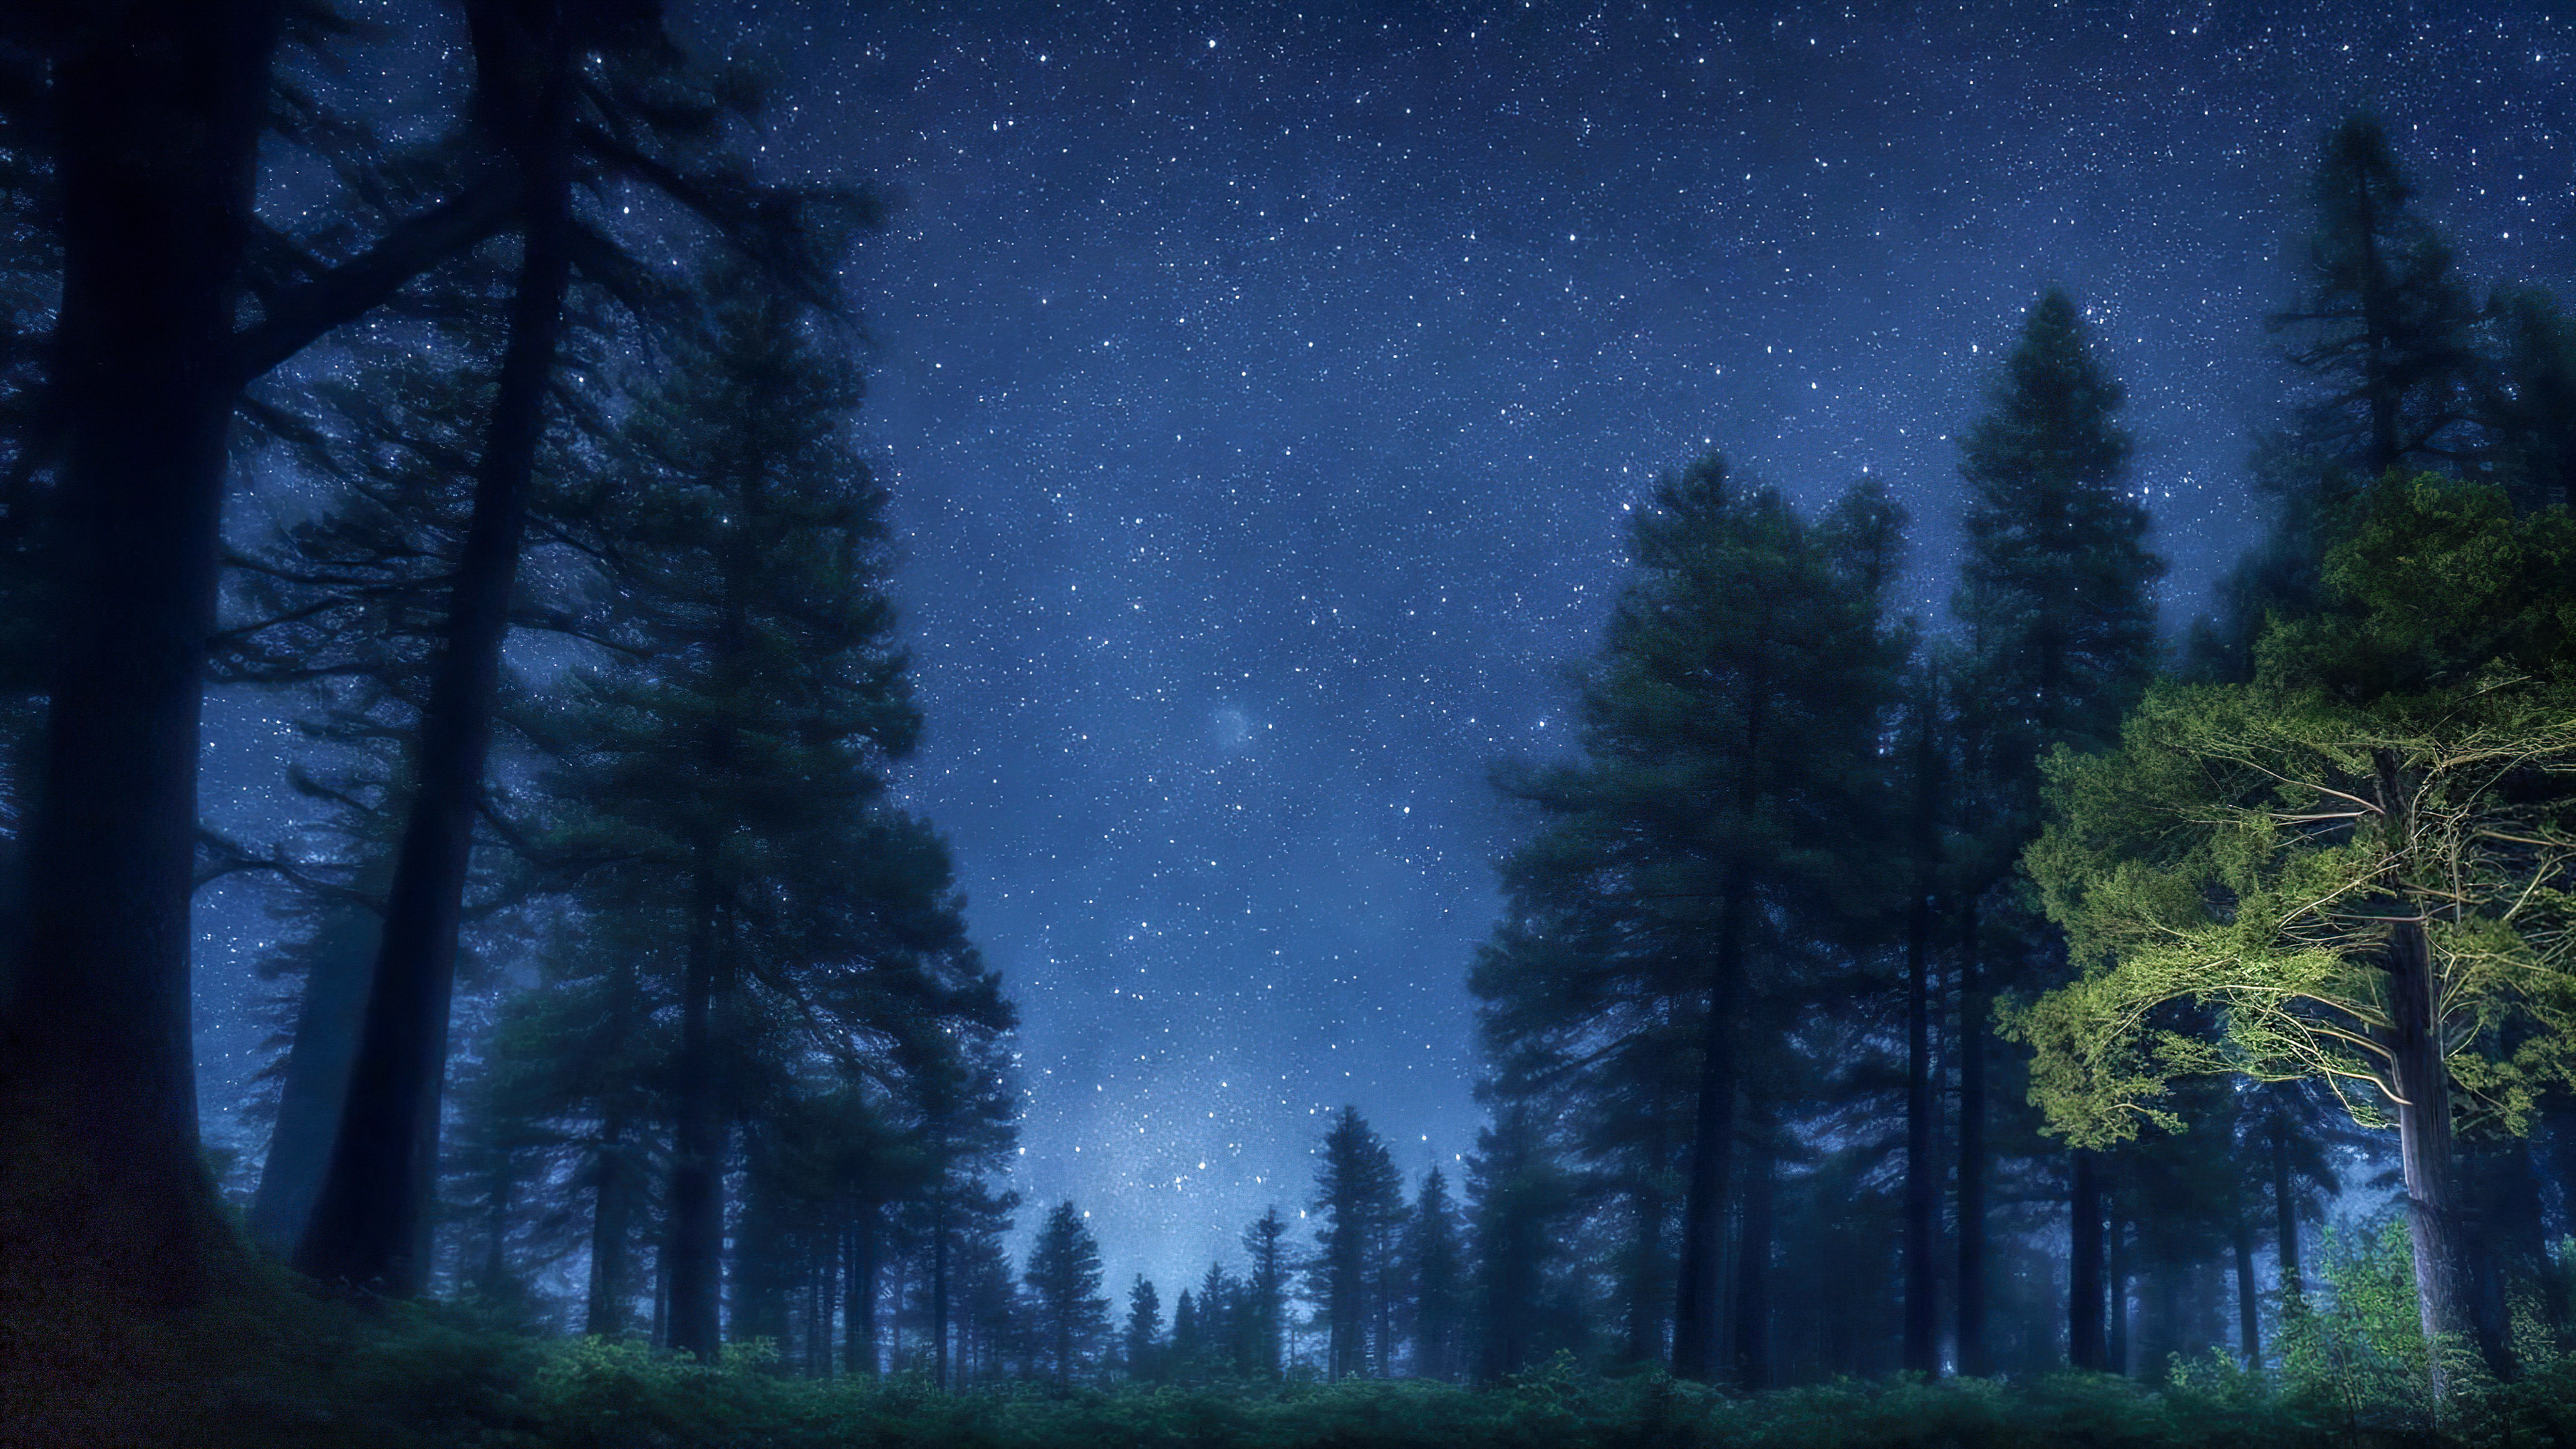 Vivez la tranquillité de notre fond d'écran de ciel nocturne en 4K, présentant une forêt tranquille la nuit, avec de grands arbres anciens sous un ciel étoilé et une douce lueur au clair de lune.